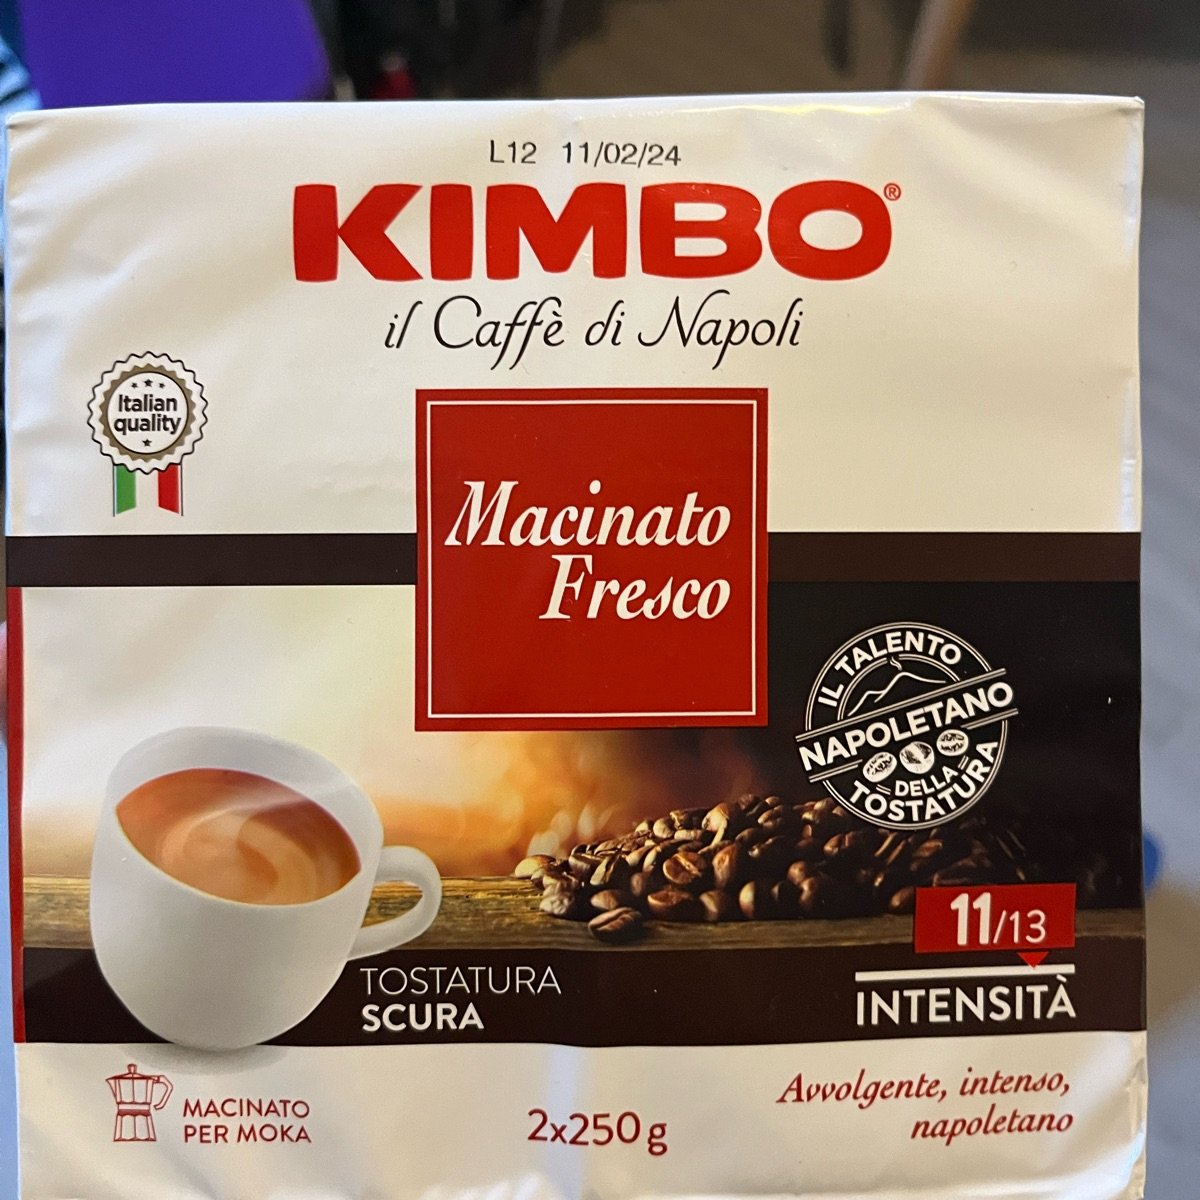 Kimbo Aroma Italiano Deciso Review